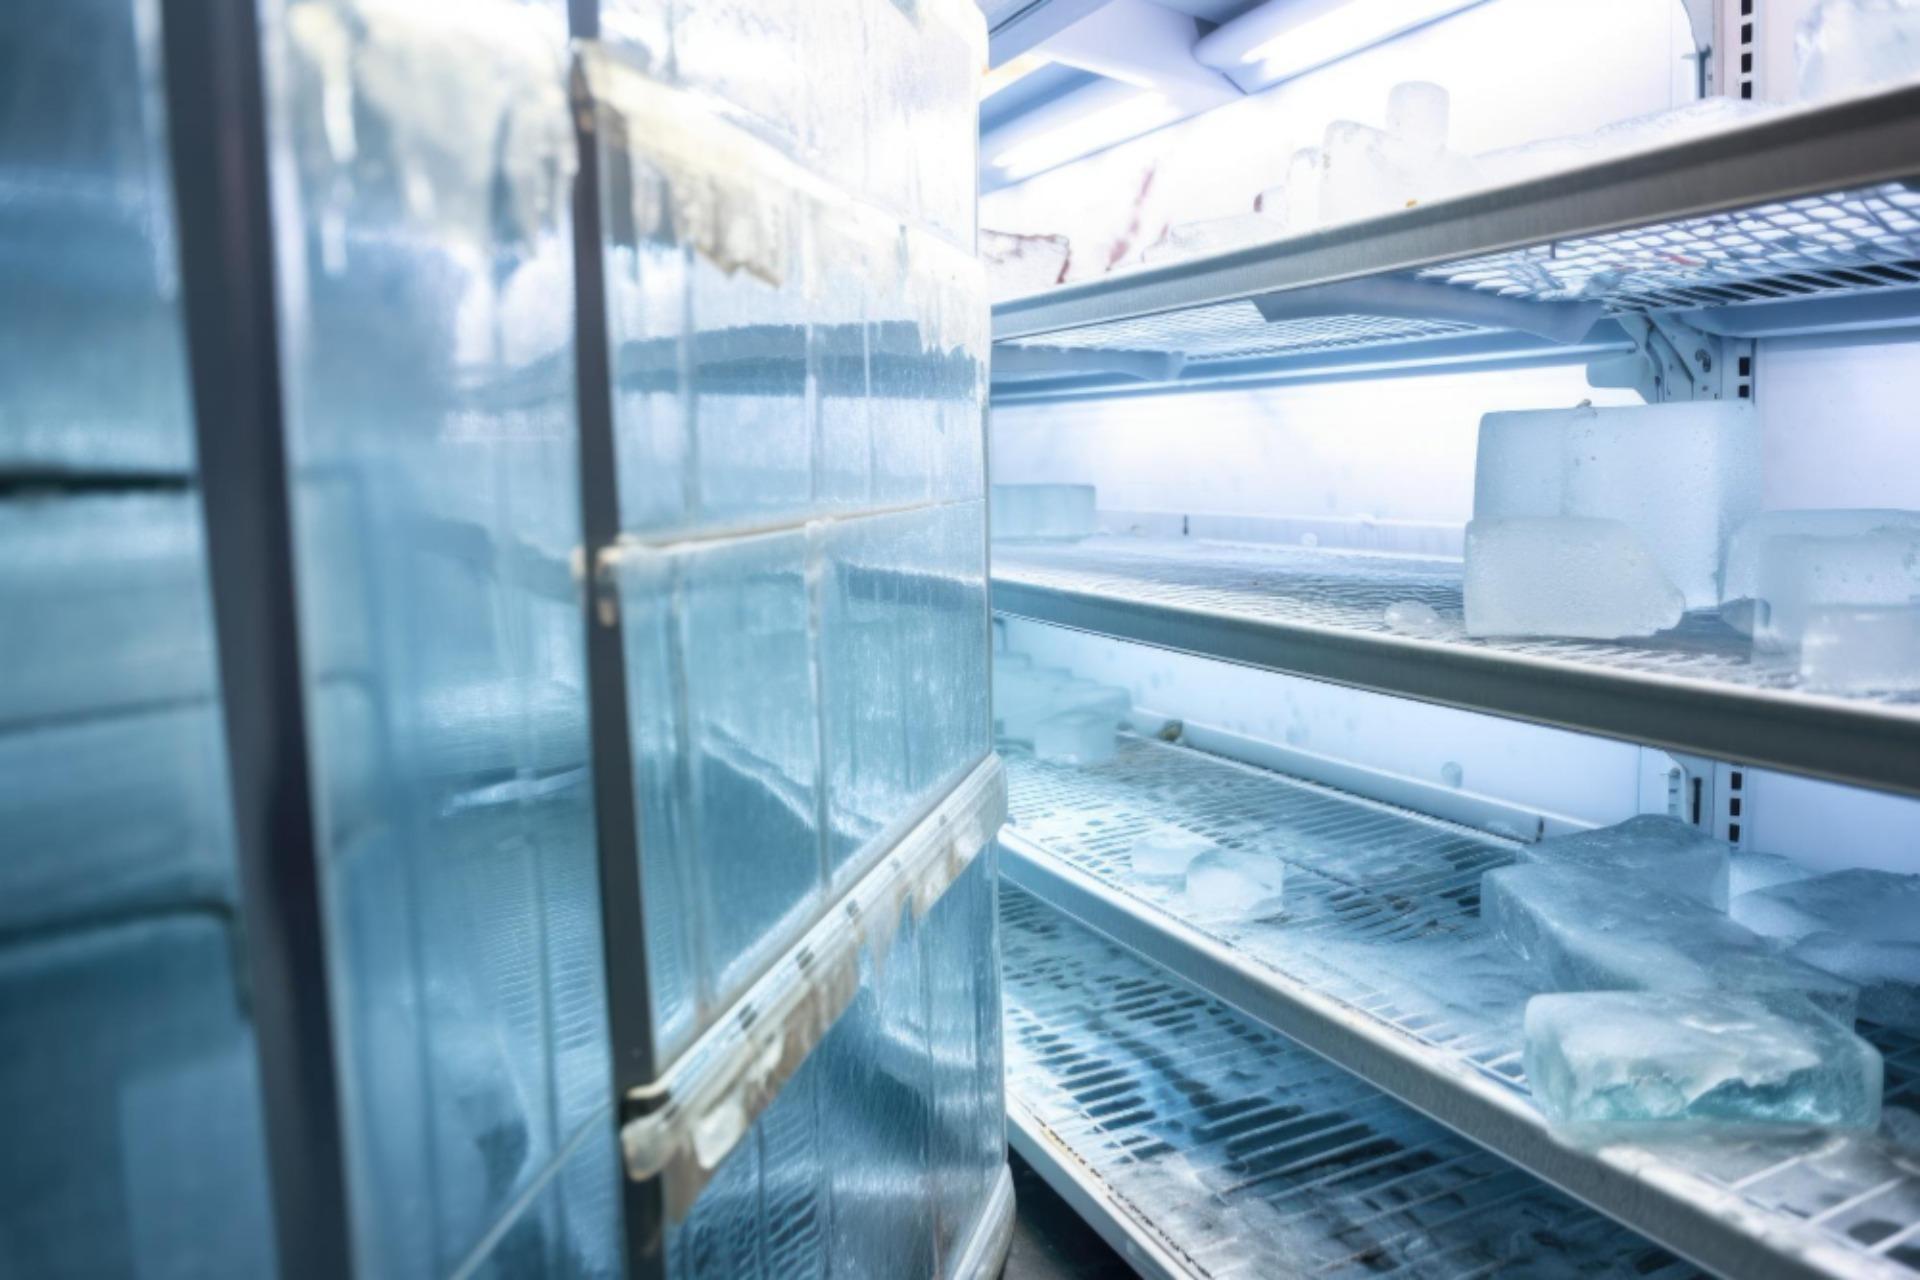 Pellicola in freezer: conservazione degli alimenti nei freezer professionali